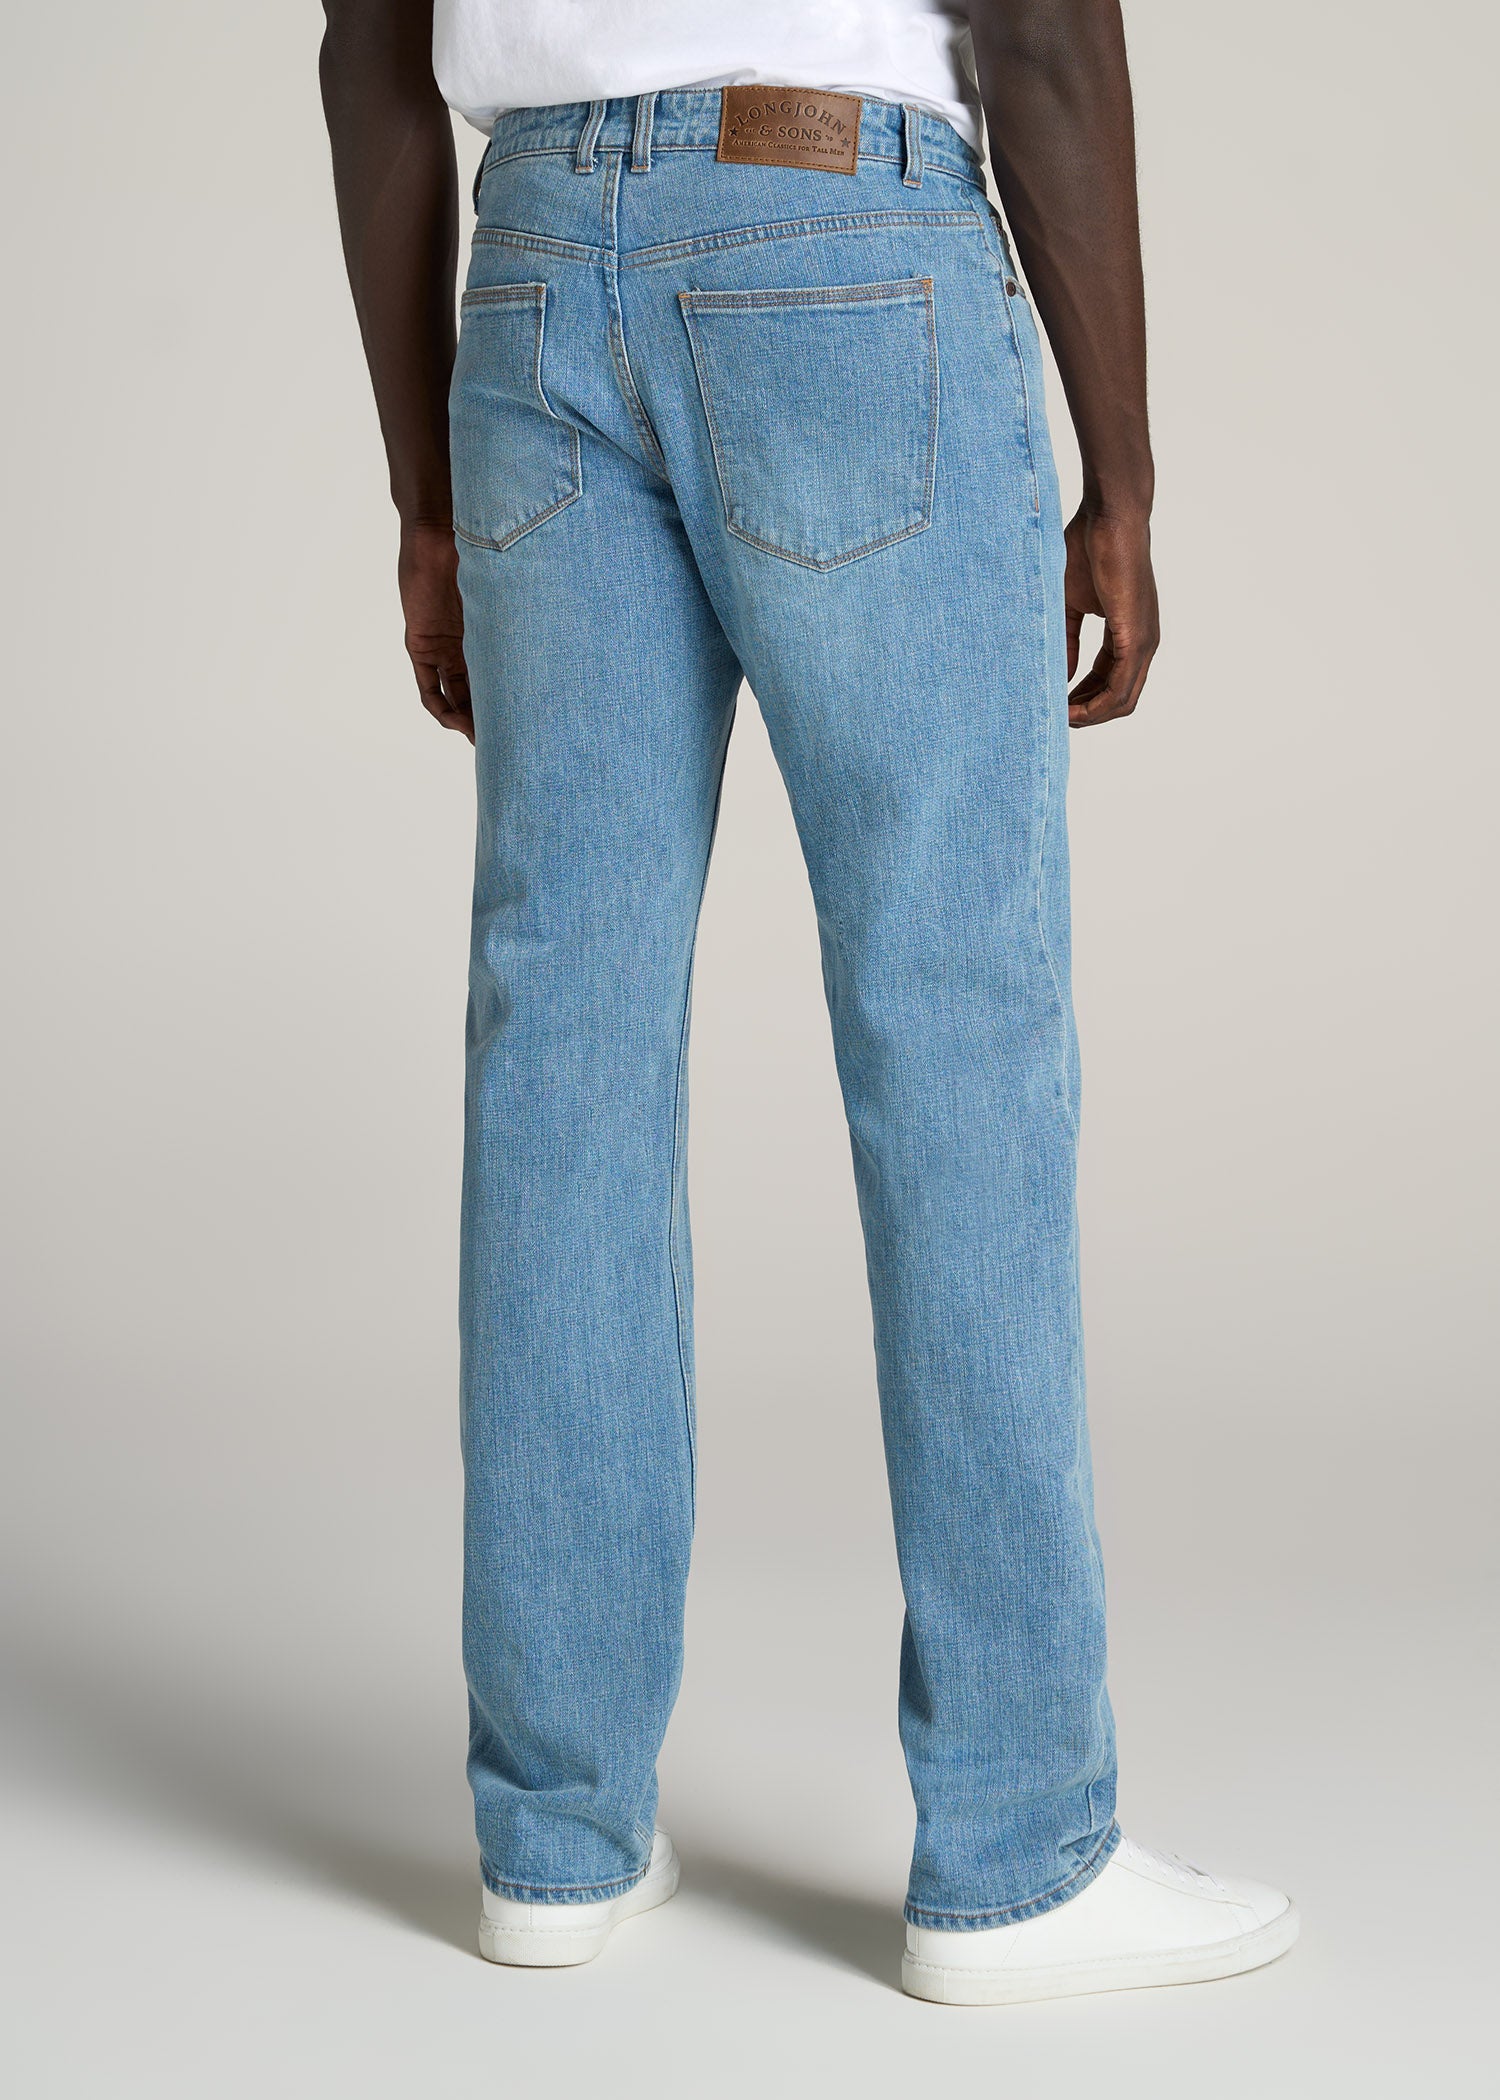 LJ&S Straight Fit Tall Jean Heritage Faded | American Tall